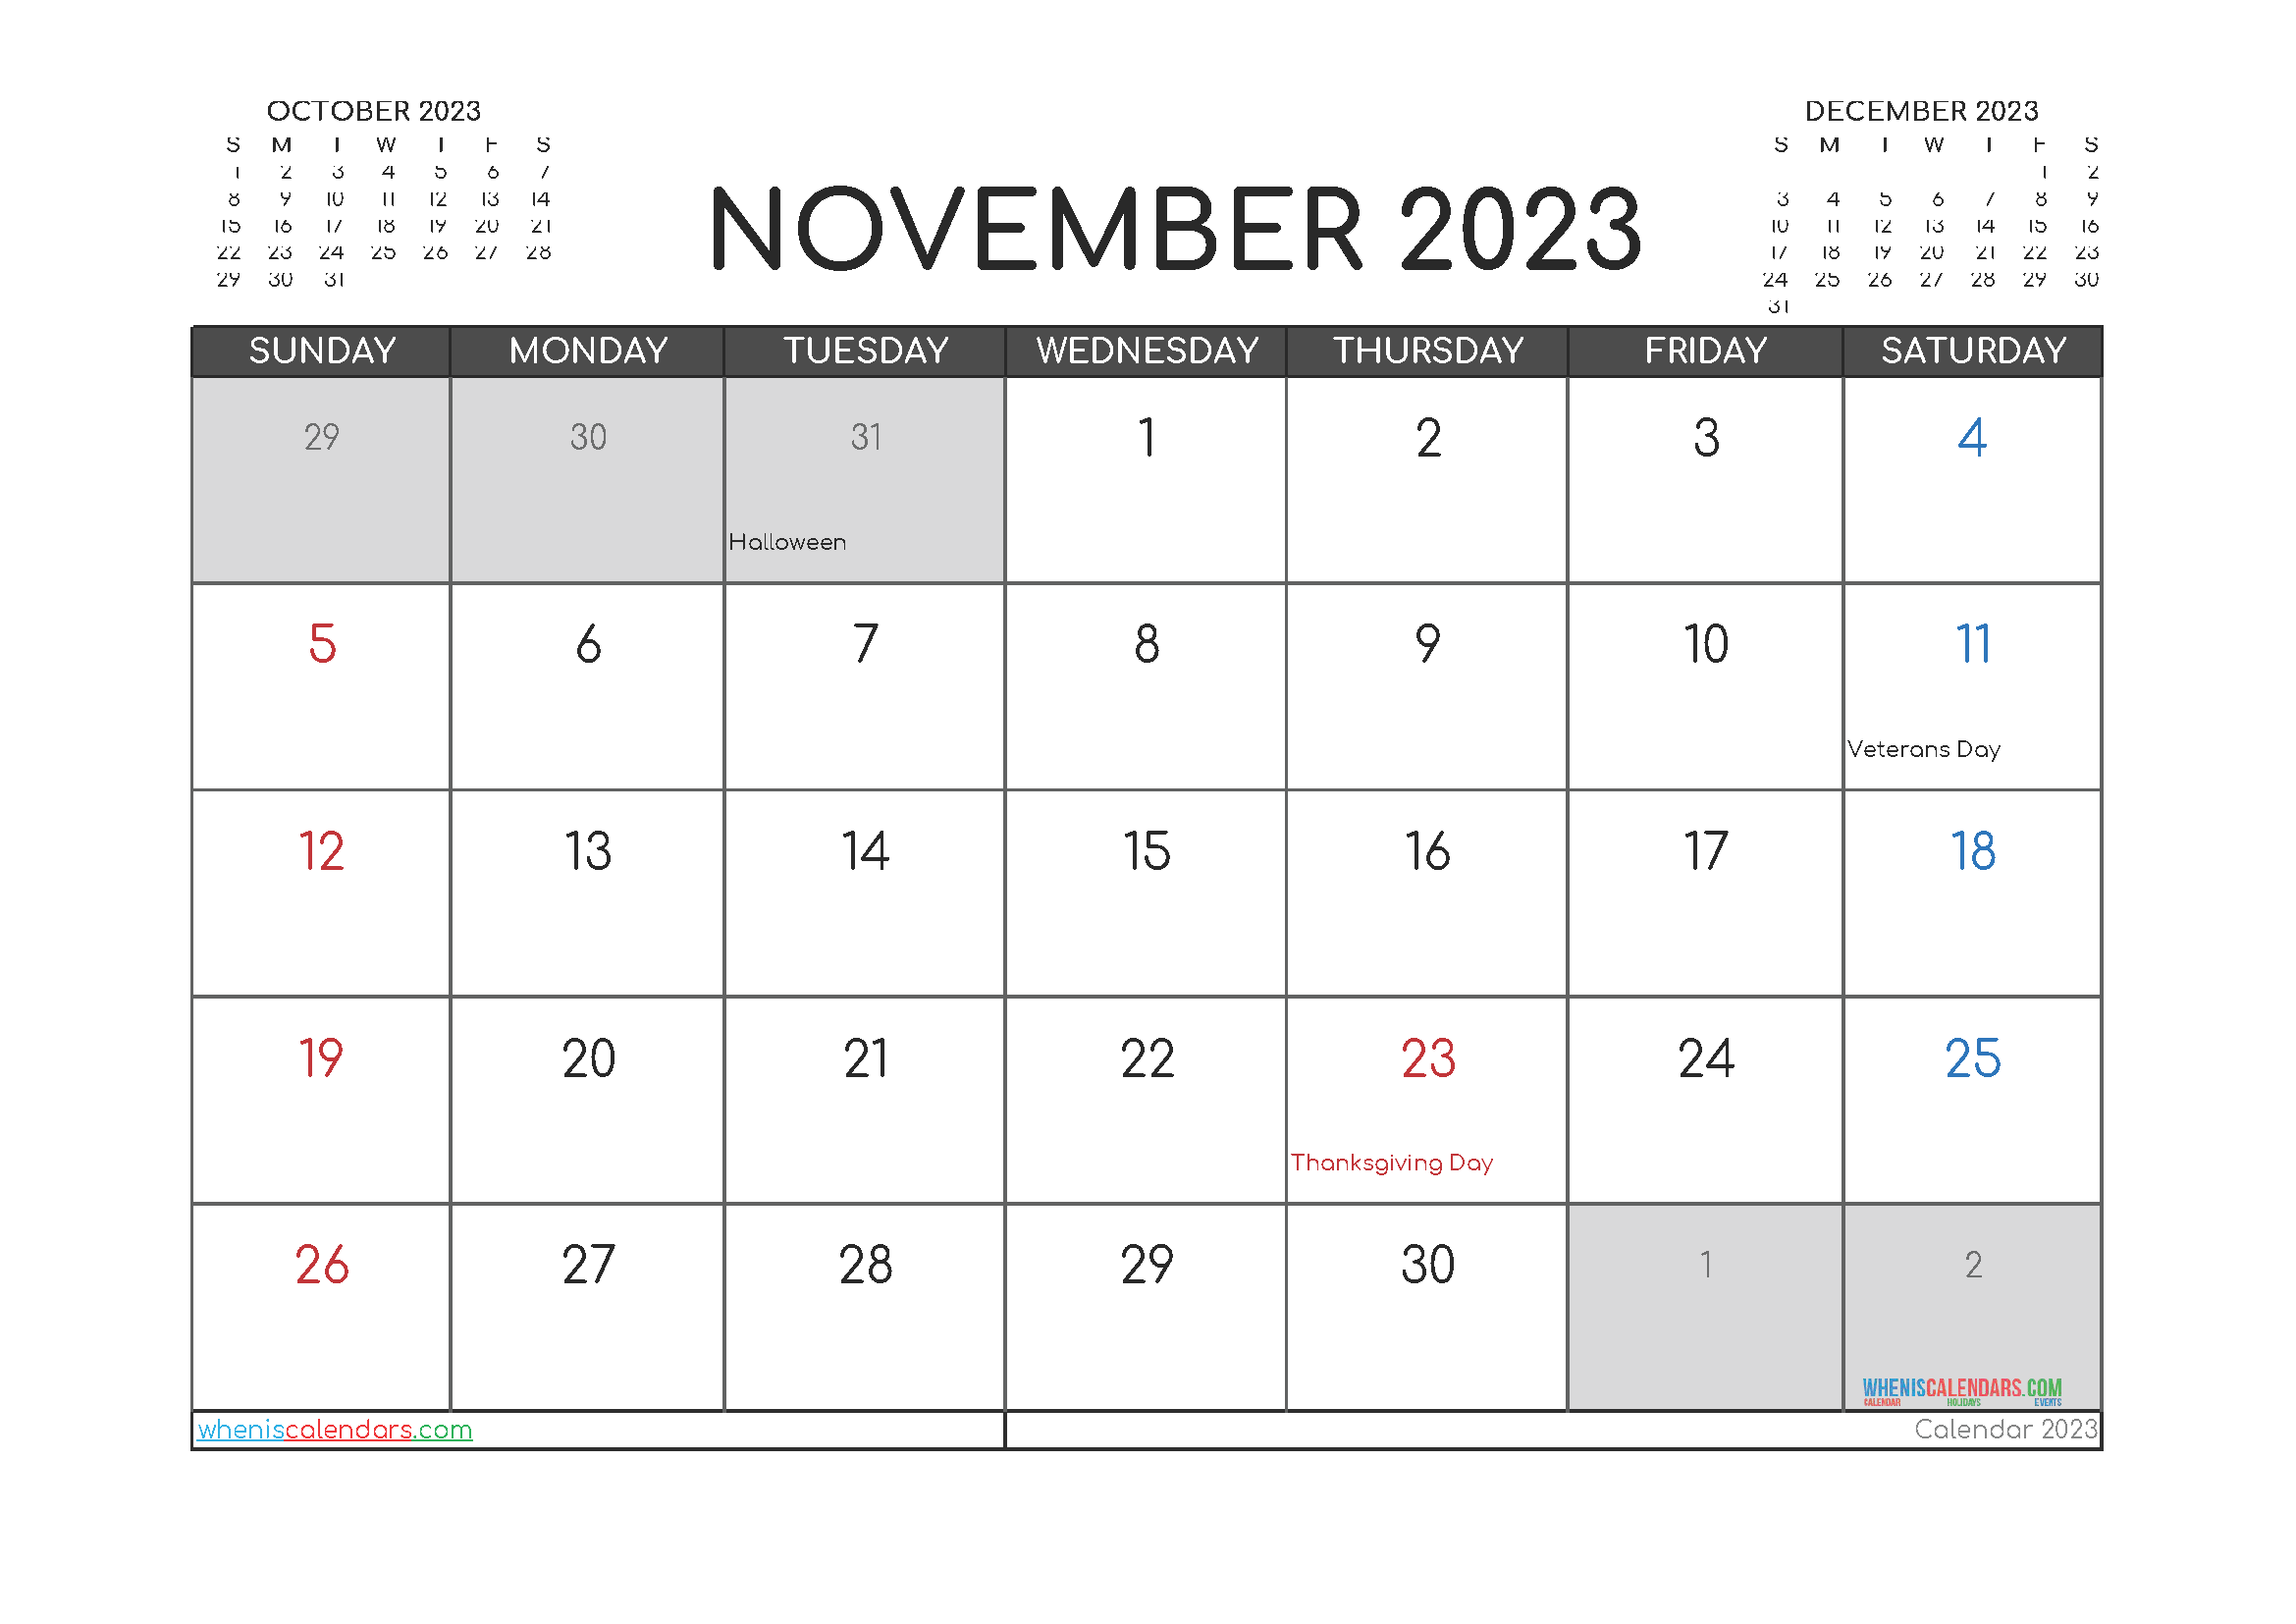 november-2023-calendar-printable-printable-world-holiday